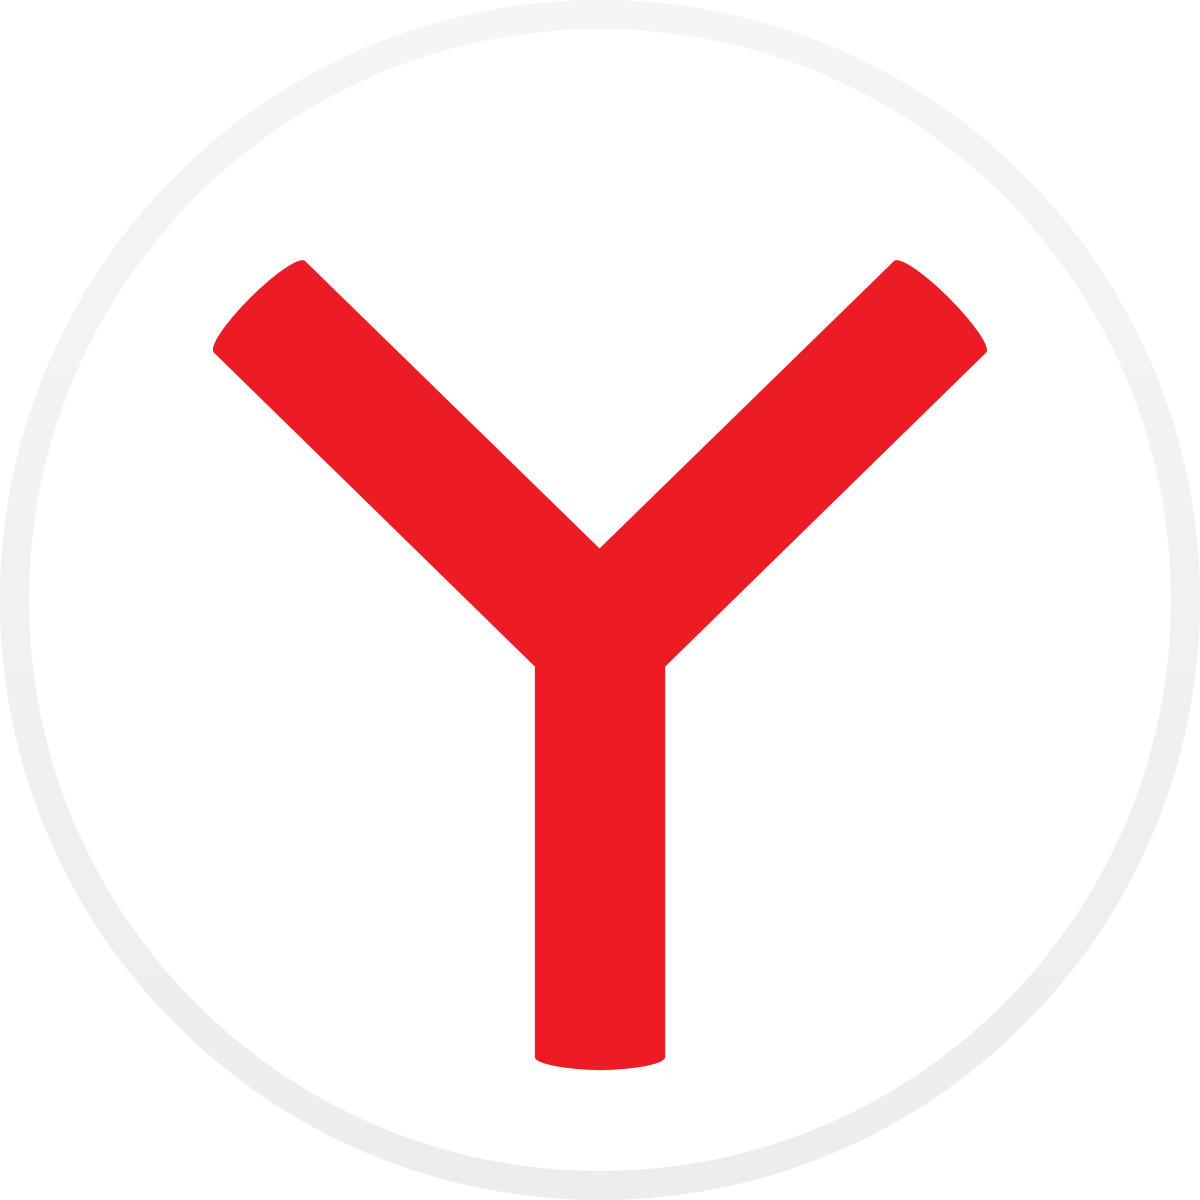 Яндекс Браузер 23.5.0.2271 для Windows с Алисой Последняя версия